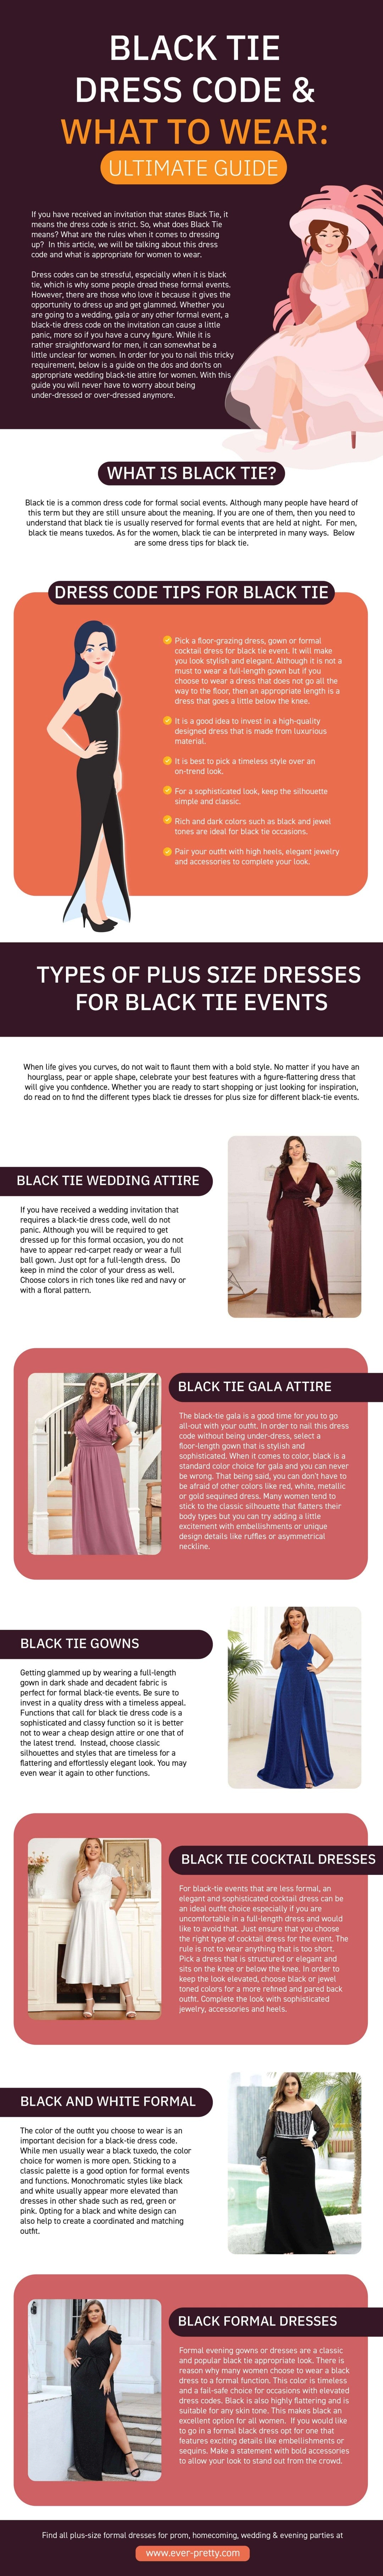 Black Tie Dresses Code Infographic